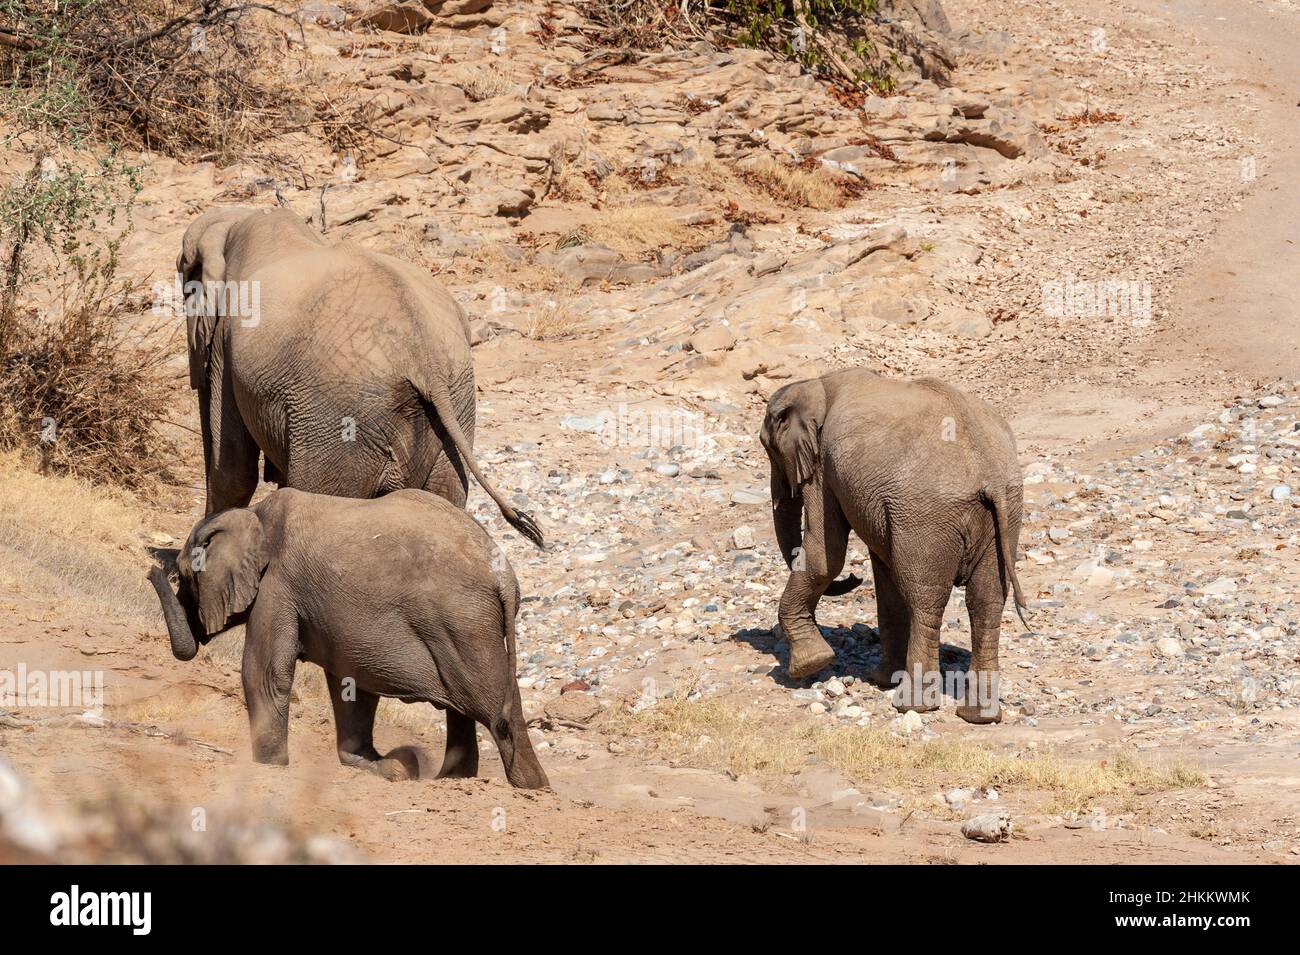 Deux éléphants de désert africains adultes - Loxodonta Africana - et leur veau errant dans le désert dans le nord-ouest de la Namibie. Banque D'Images